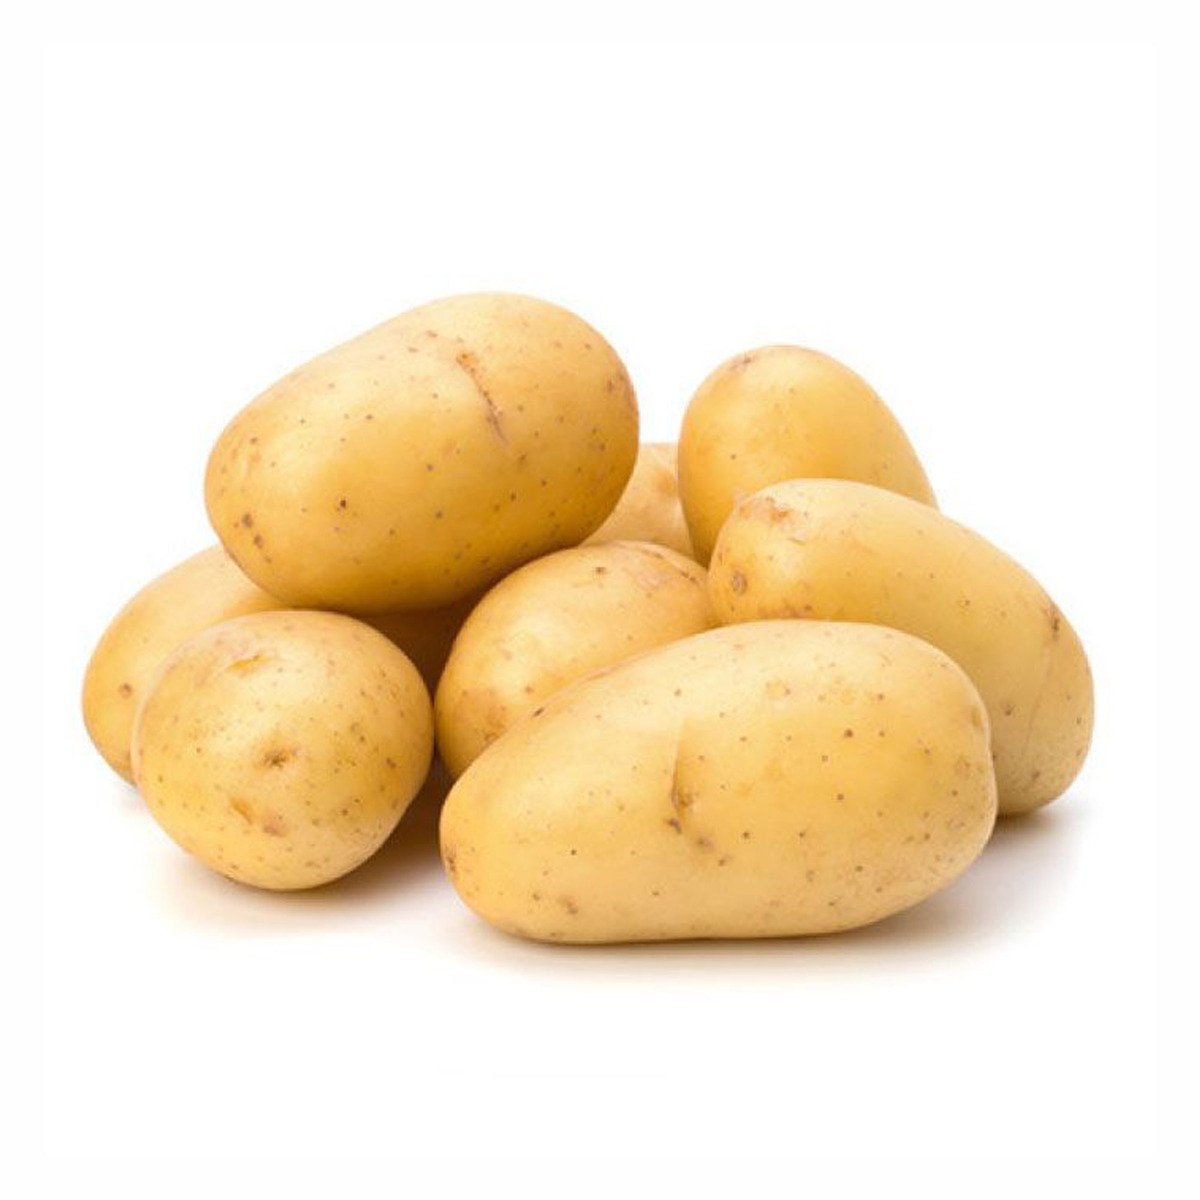 Organic Potato 1 pkt